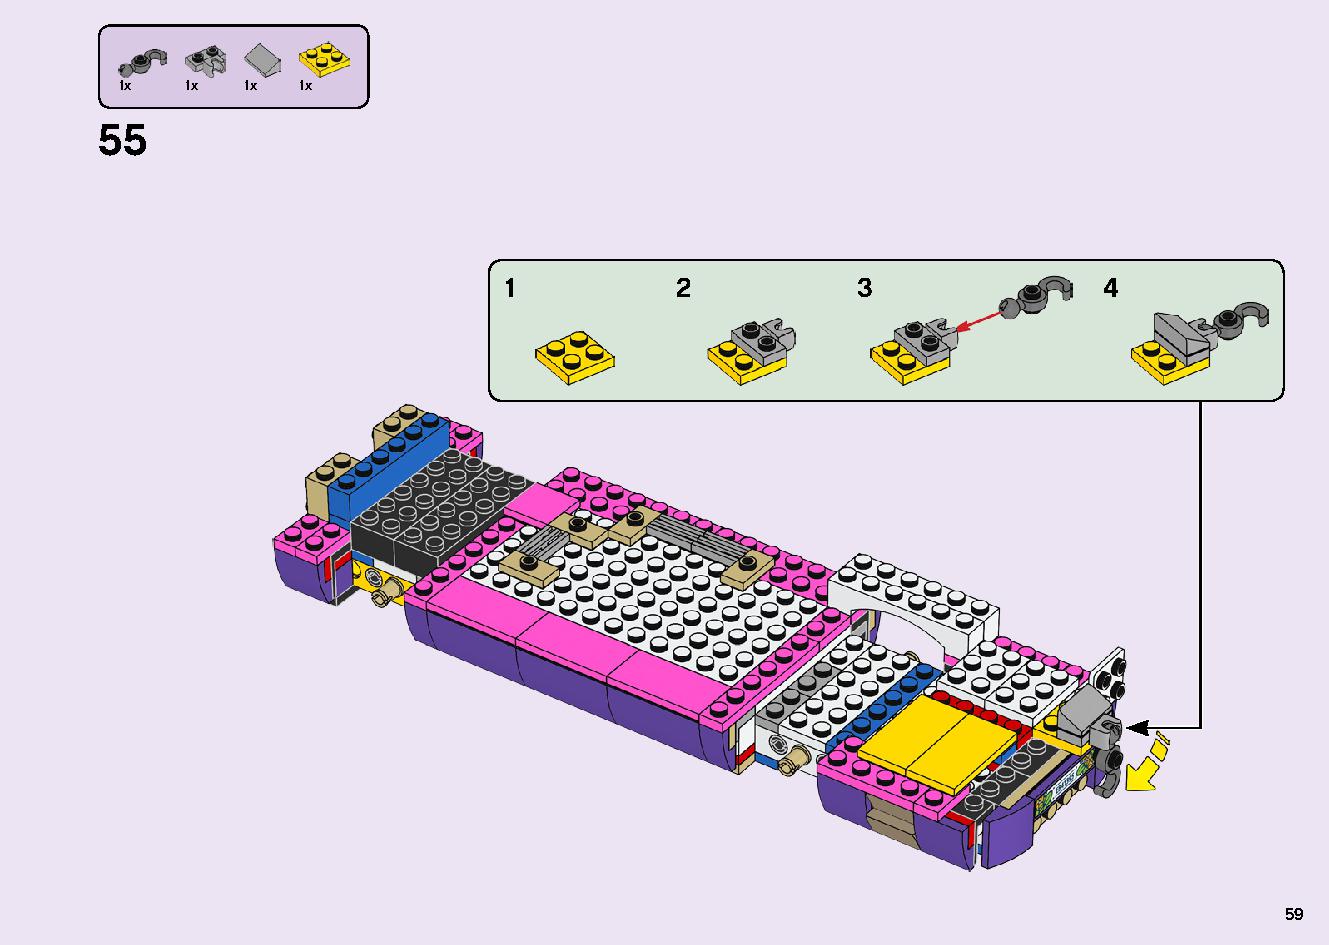 フレンズのうきうきハッピー・バス 41395 レゴの商品情報 レゴの説明書・組立方法 59 page